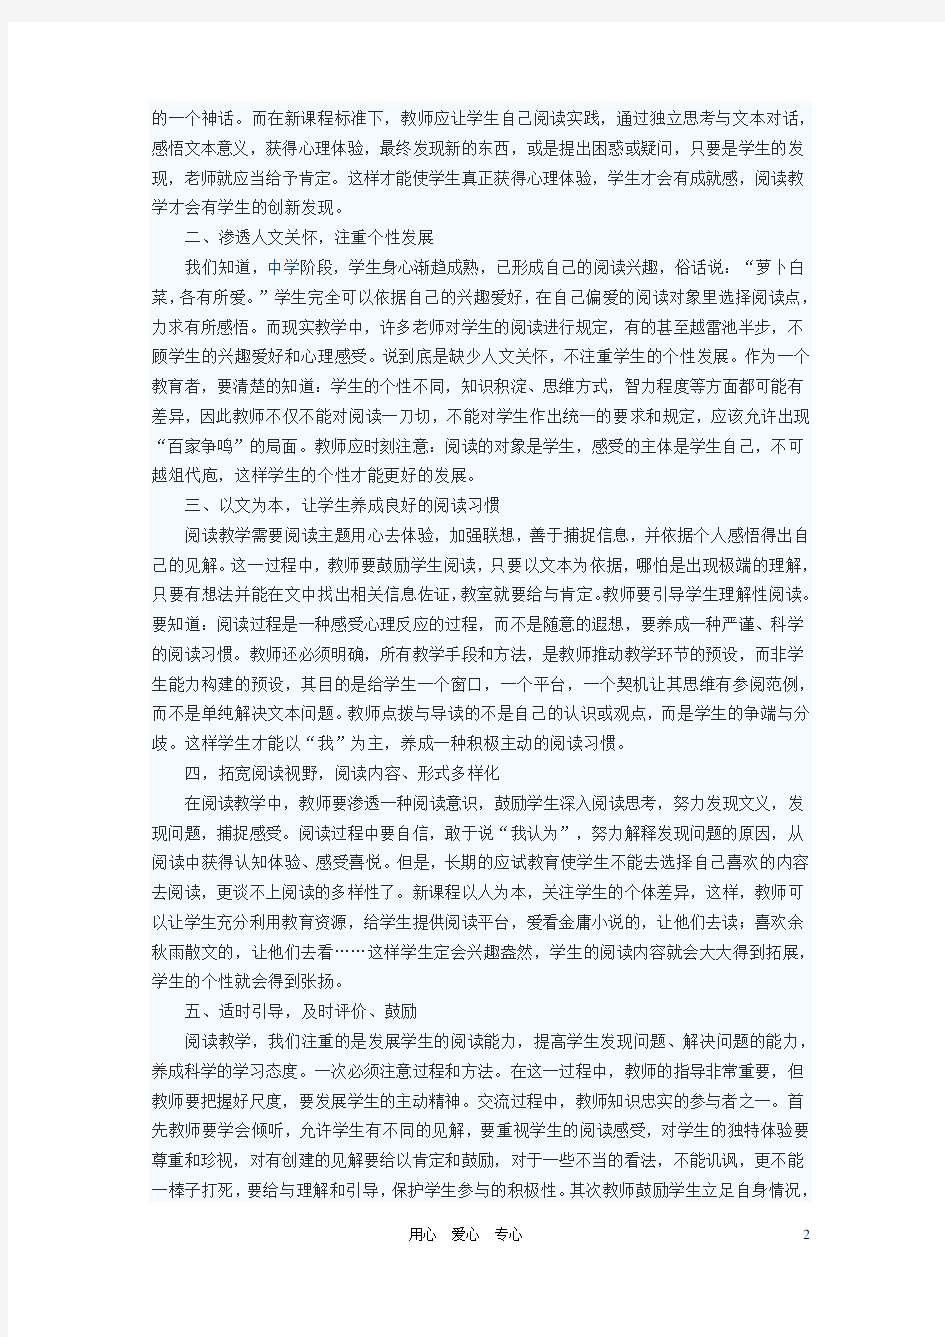 初中语文教学论文 让语文课堂绽放个性光彩 - 副本